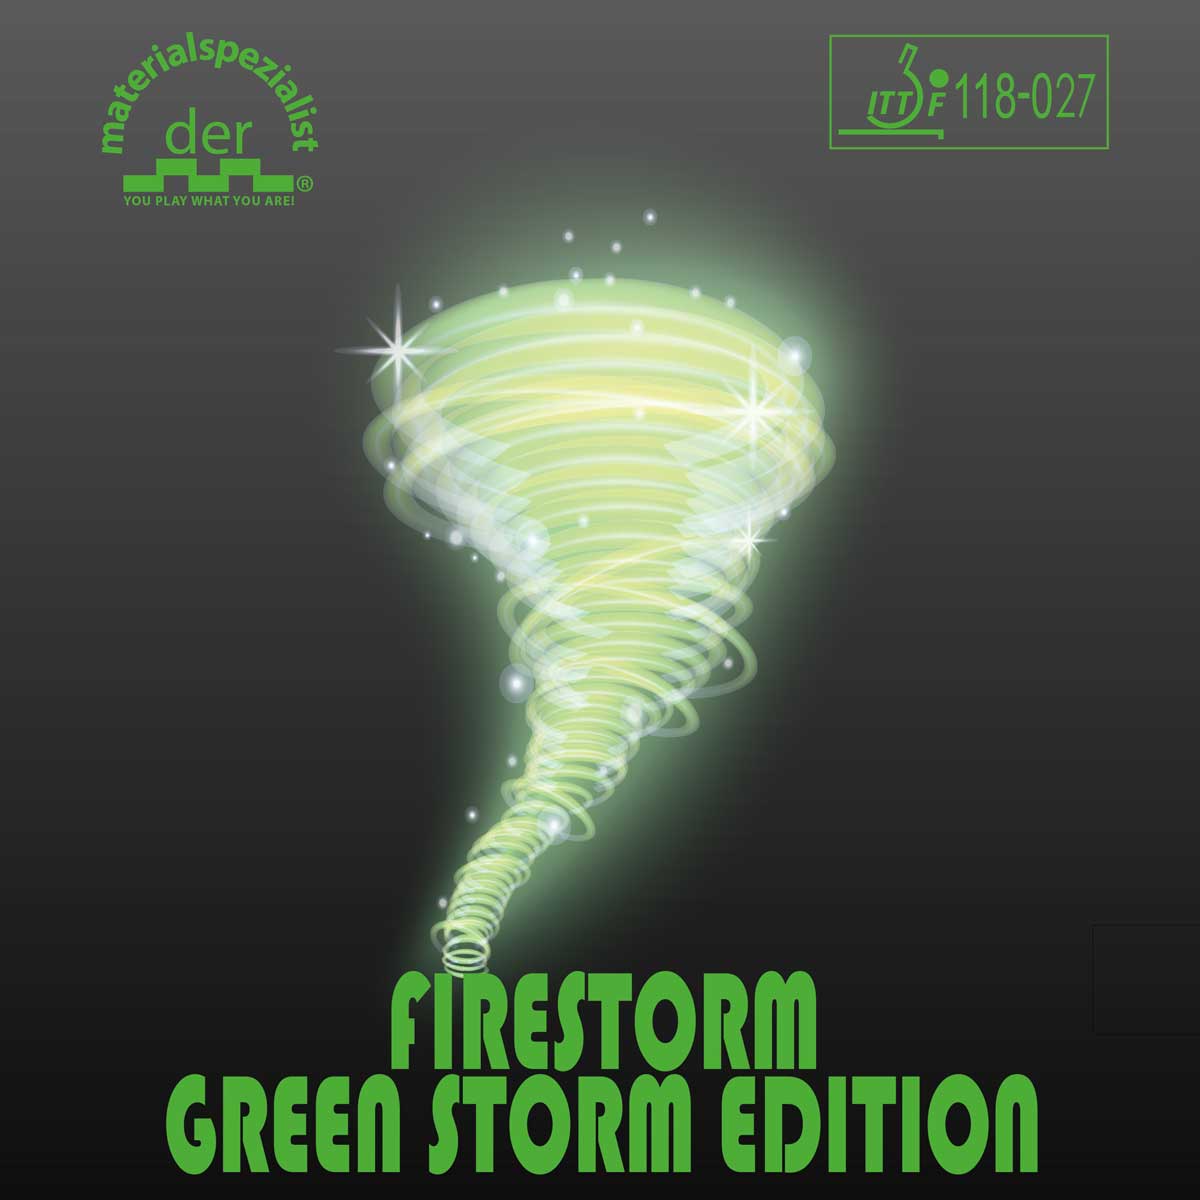 der materialspezialist Belag Firestorm Green Storm grün OX